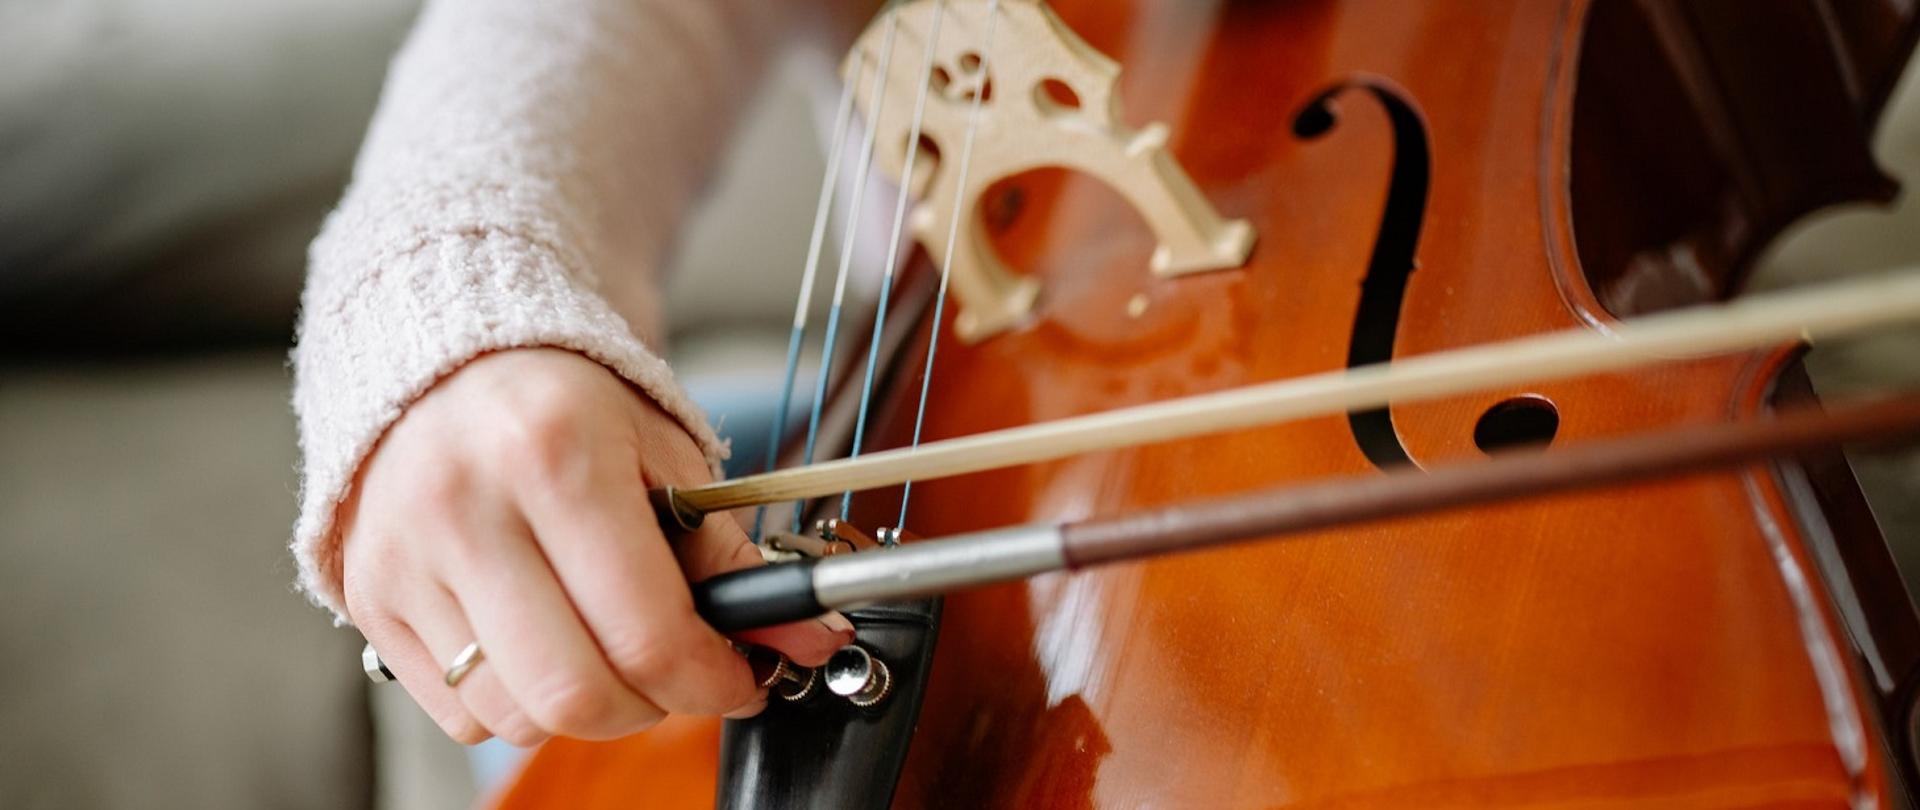 Zdjęcie przedstawia zbliżenie na dłoń grającej wiolonczelistki